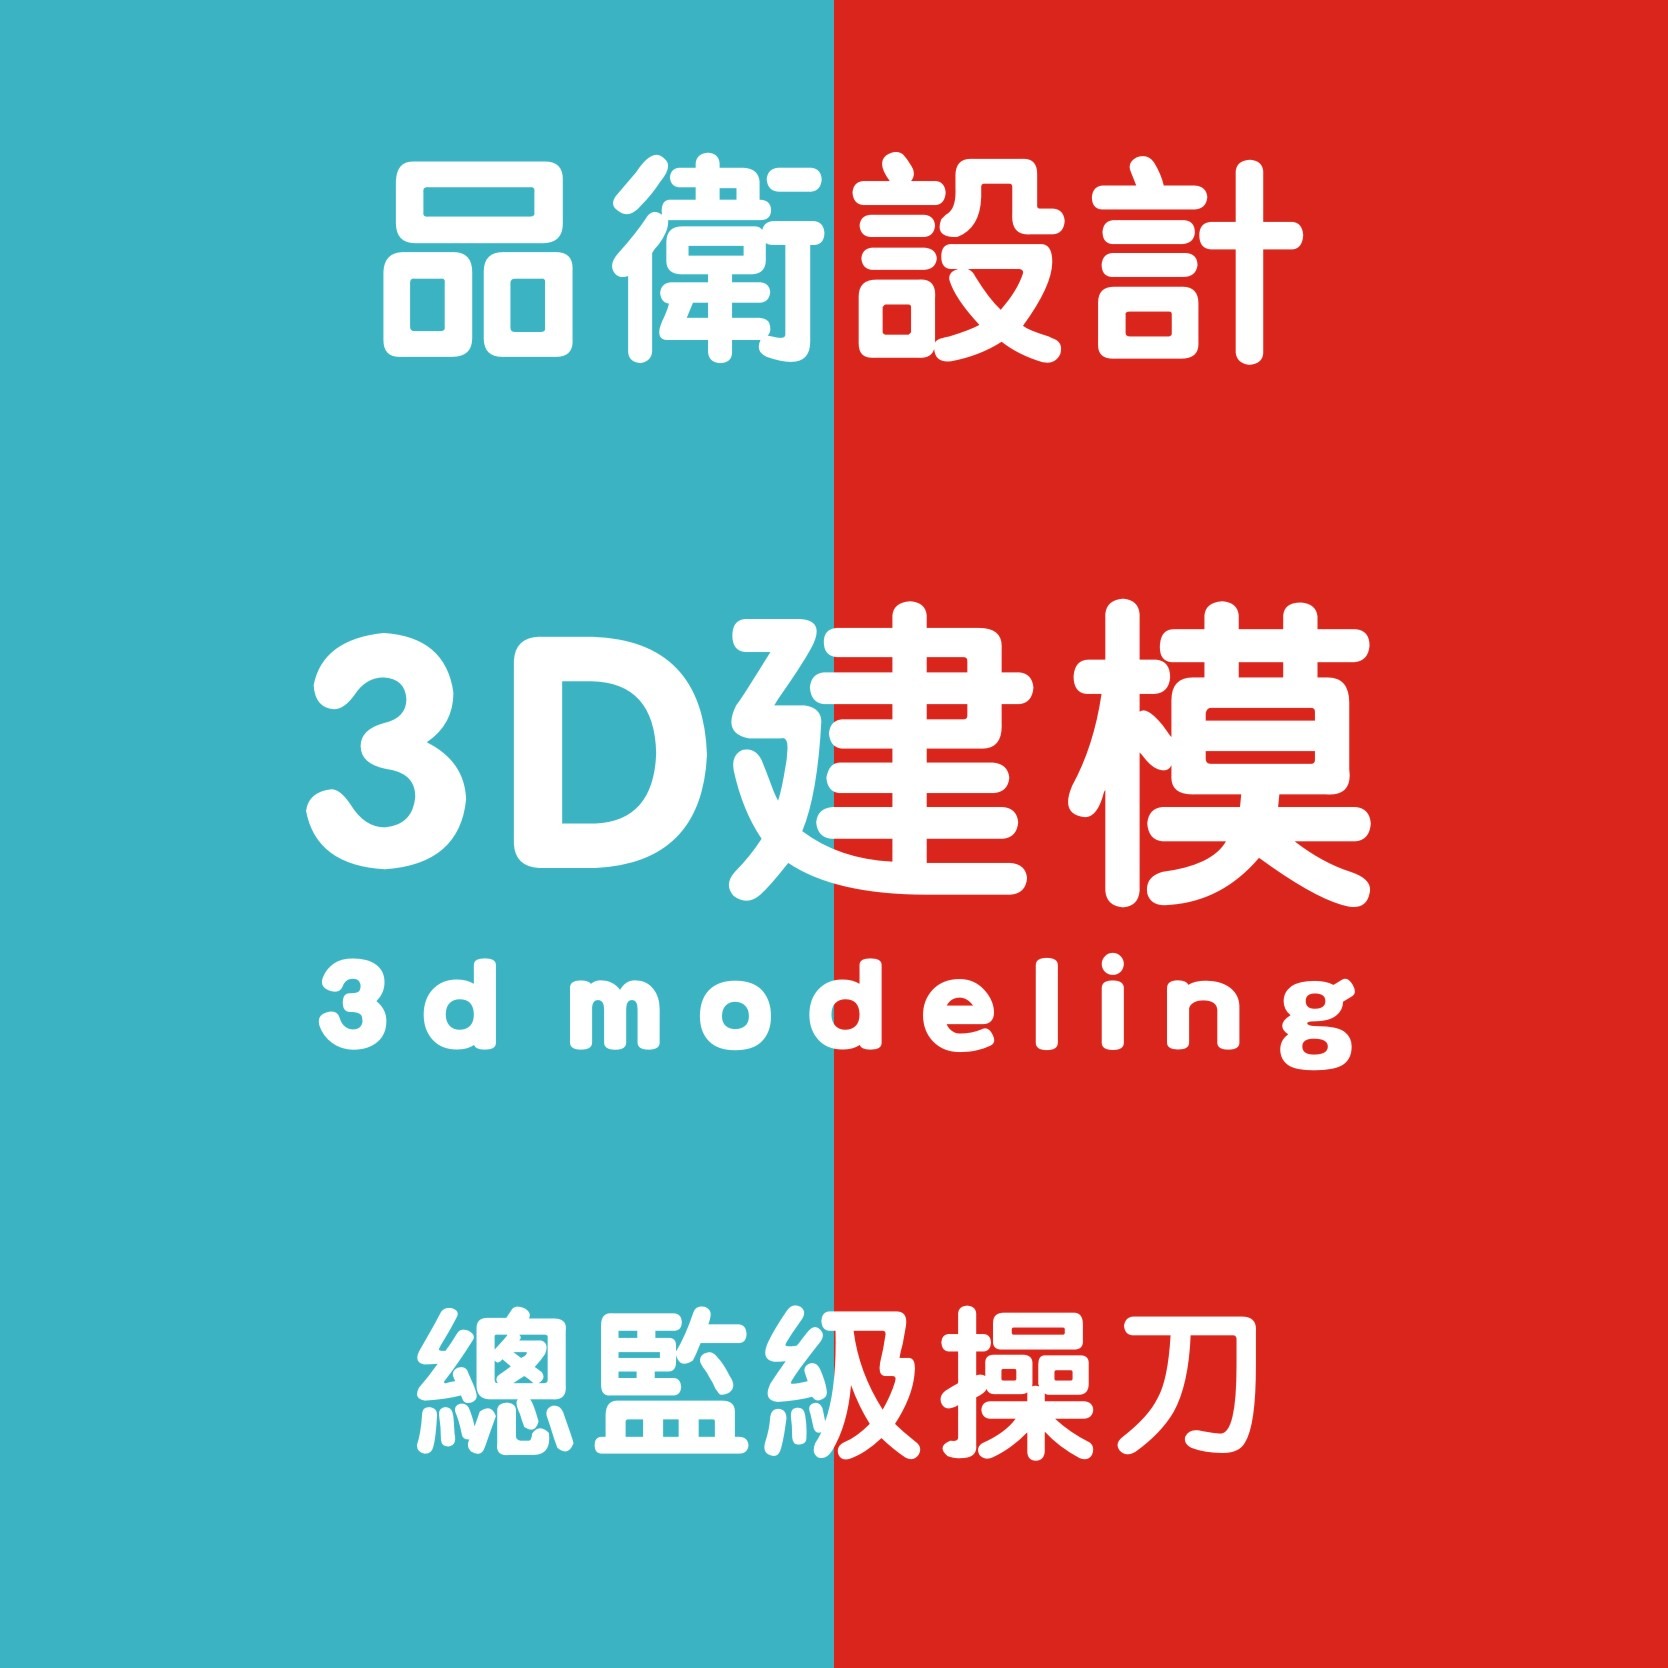 工业设计产品外观设计3D建模渲染效果图结构设计ID产品设计